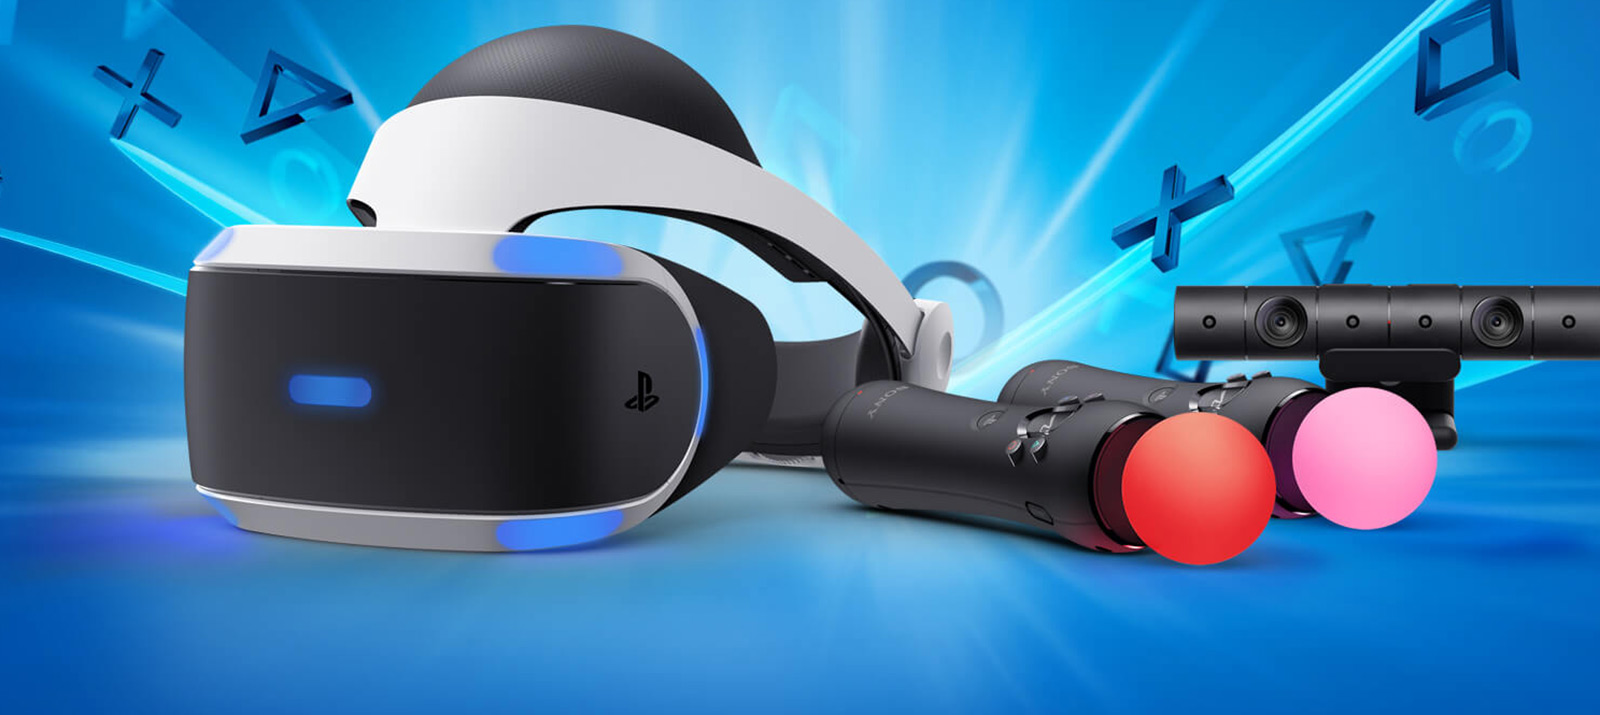 Compilations vr. Sony PS VR 2. VR шлем плейстейшен 4. VR Sony PLAYSTATION 5. VR шлем - PLAYSTATION VR,.